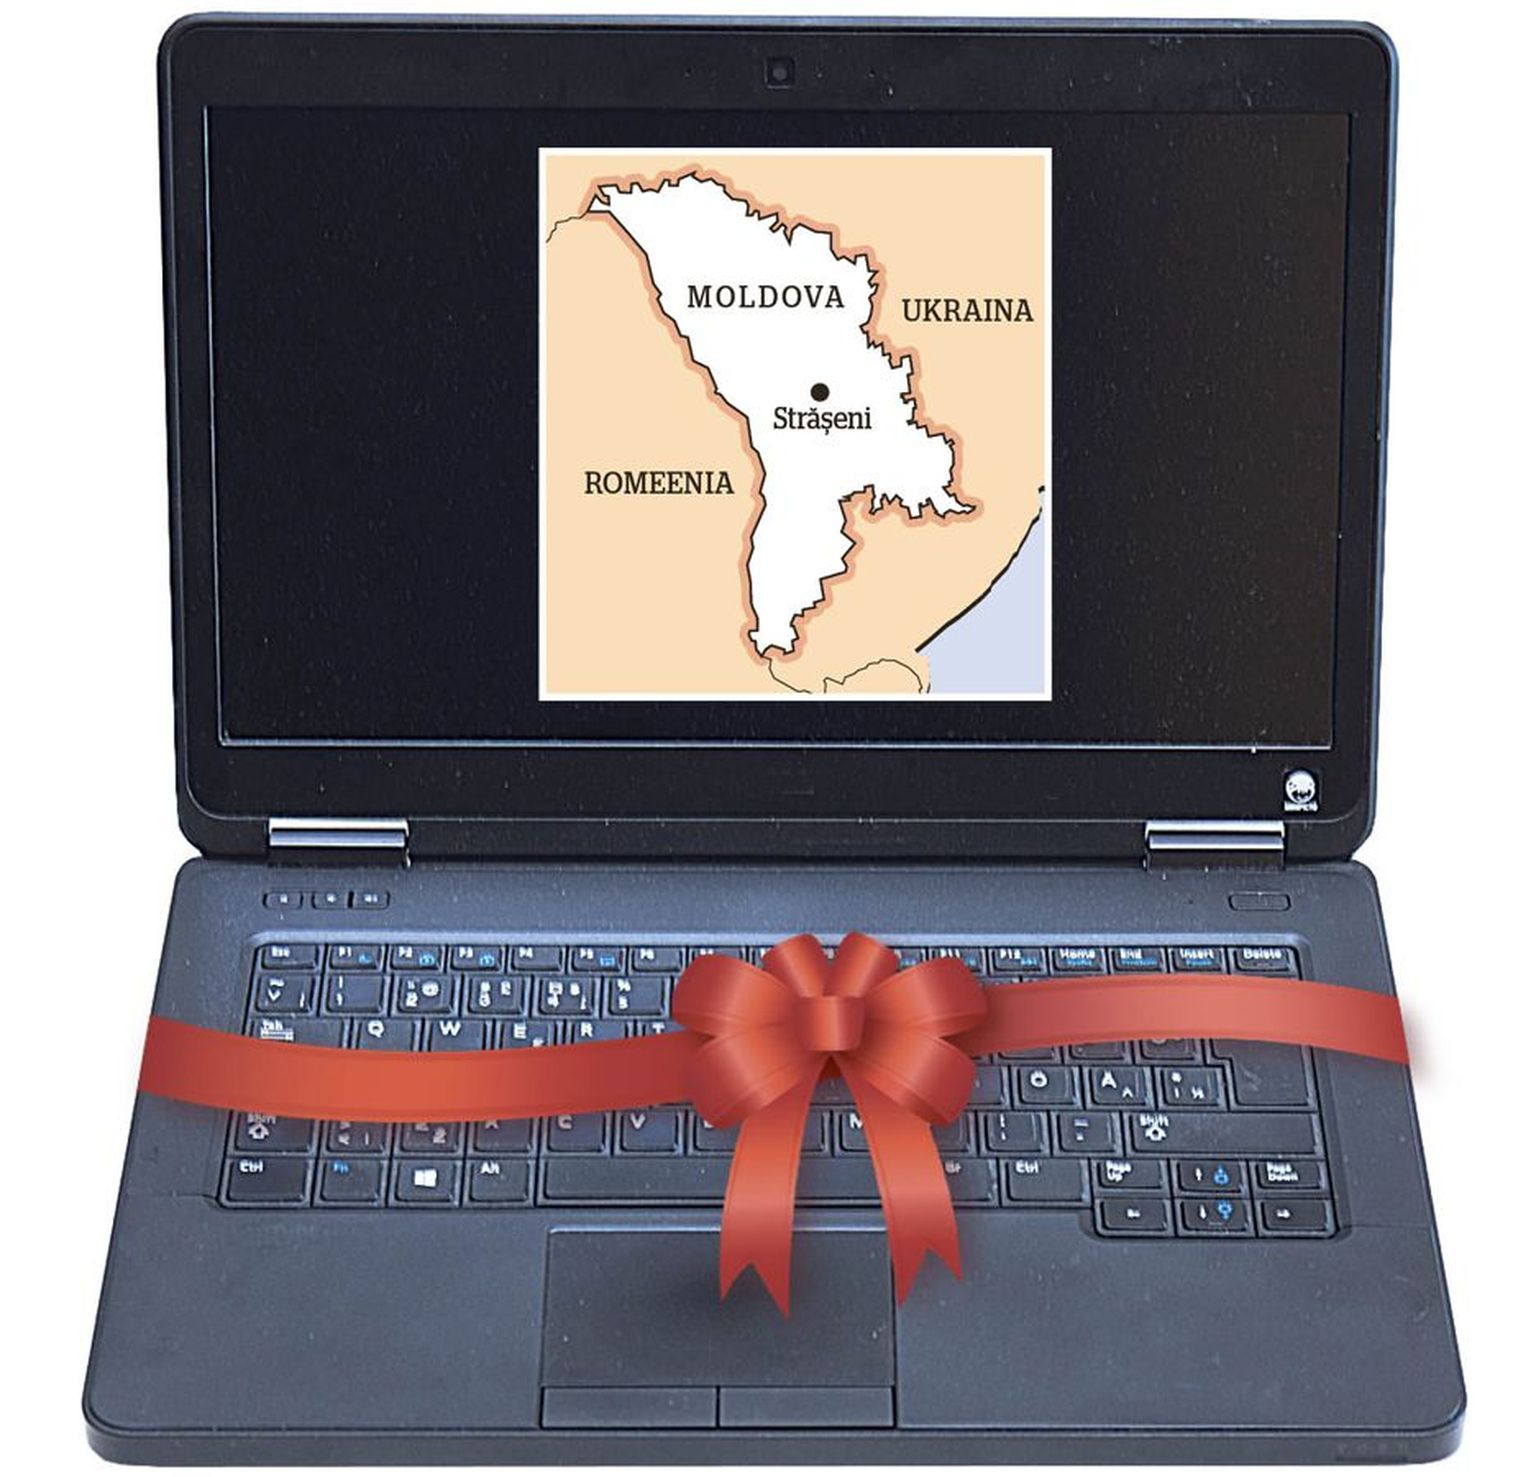 Maavalitsuse kingitusena Moldova sõpruslinnale jõuavad Strășeni inimeste käsutusse 25 vana sülearvutit, mis on rahandusministeeriumis käigust maha võetud. Viljandimaa omavalitsusjuhtide 26-liikmeline delegatsioon asub Moldova poole teele 21. mail.